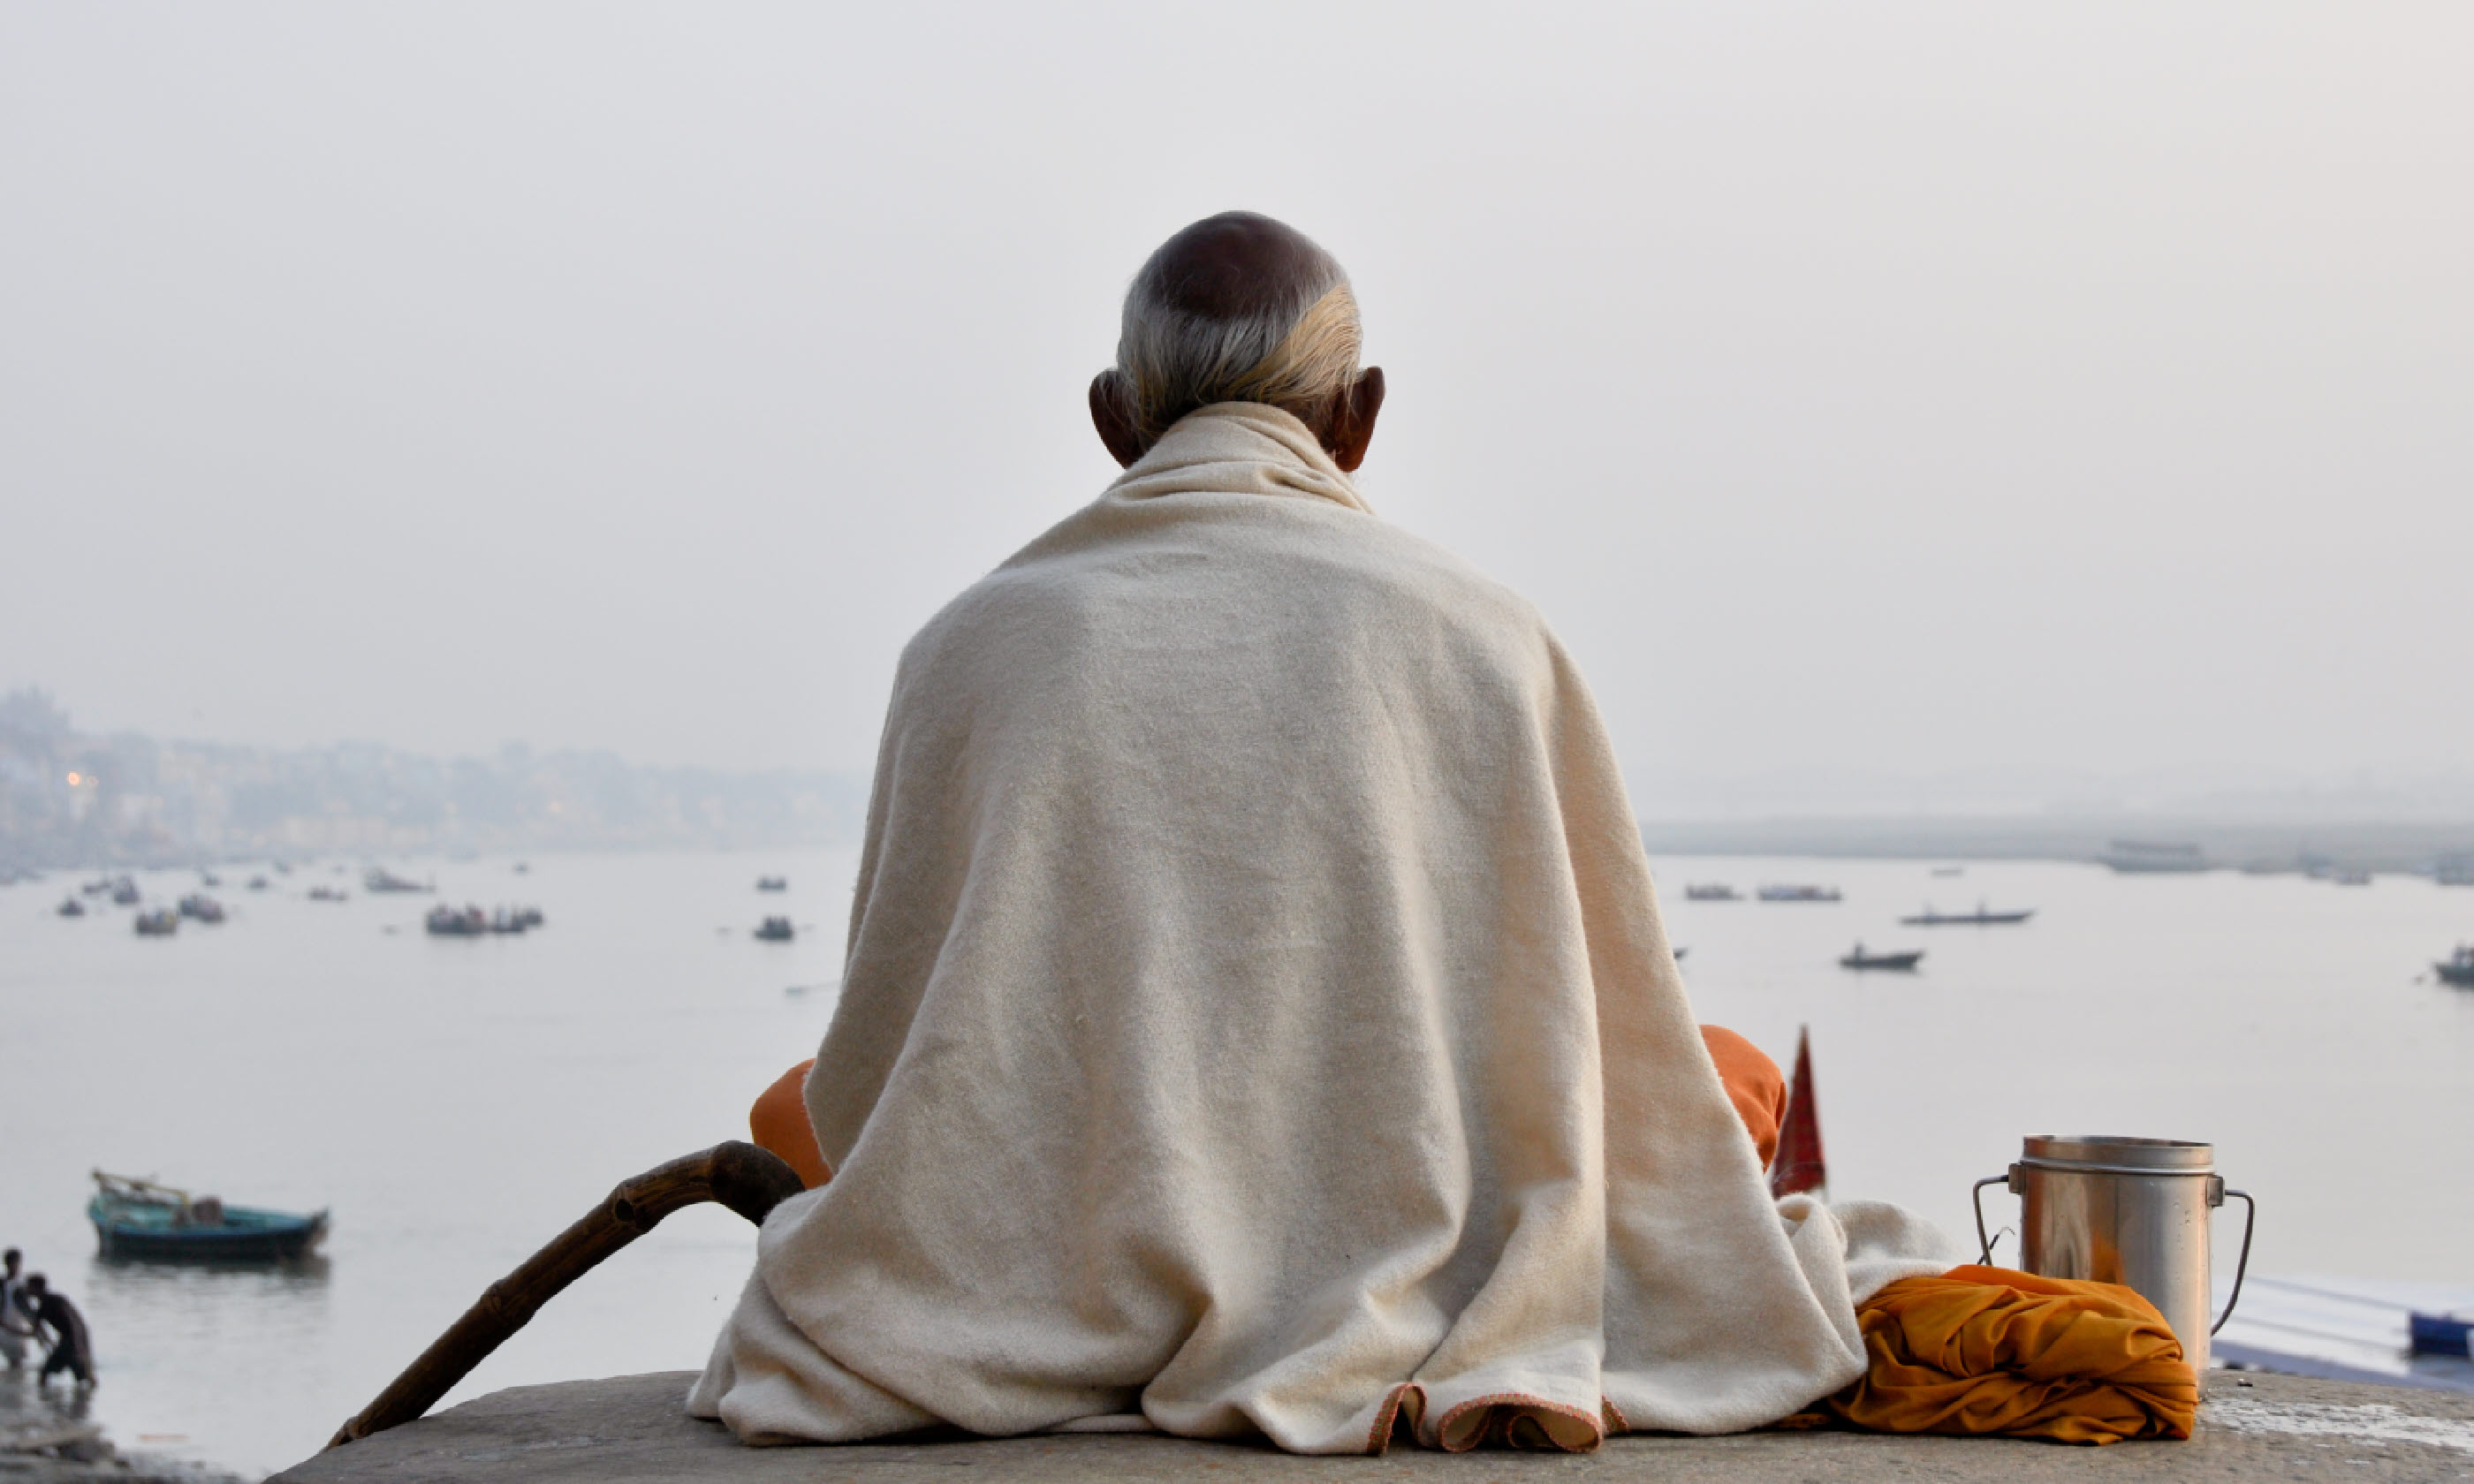 Sadhu praying at the ghats in Varanasi (Shutterstock)